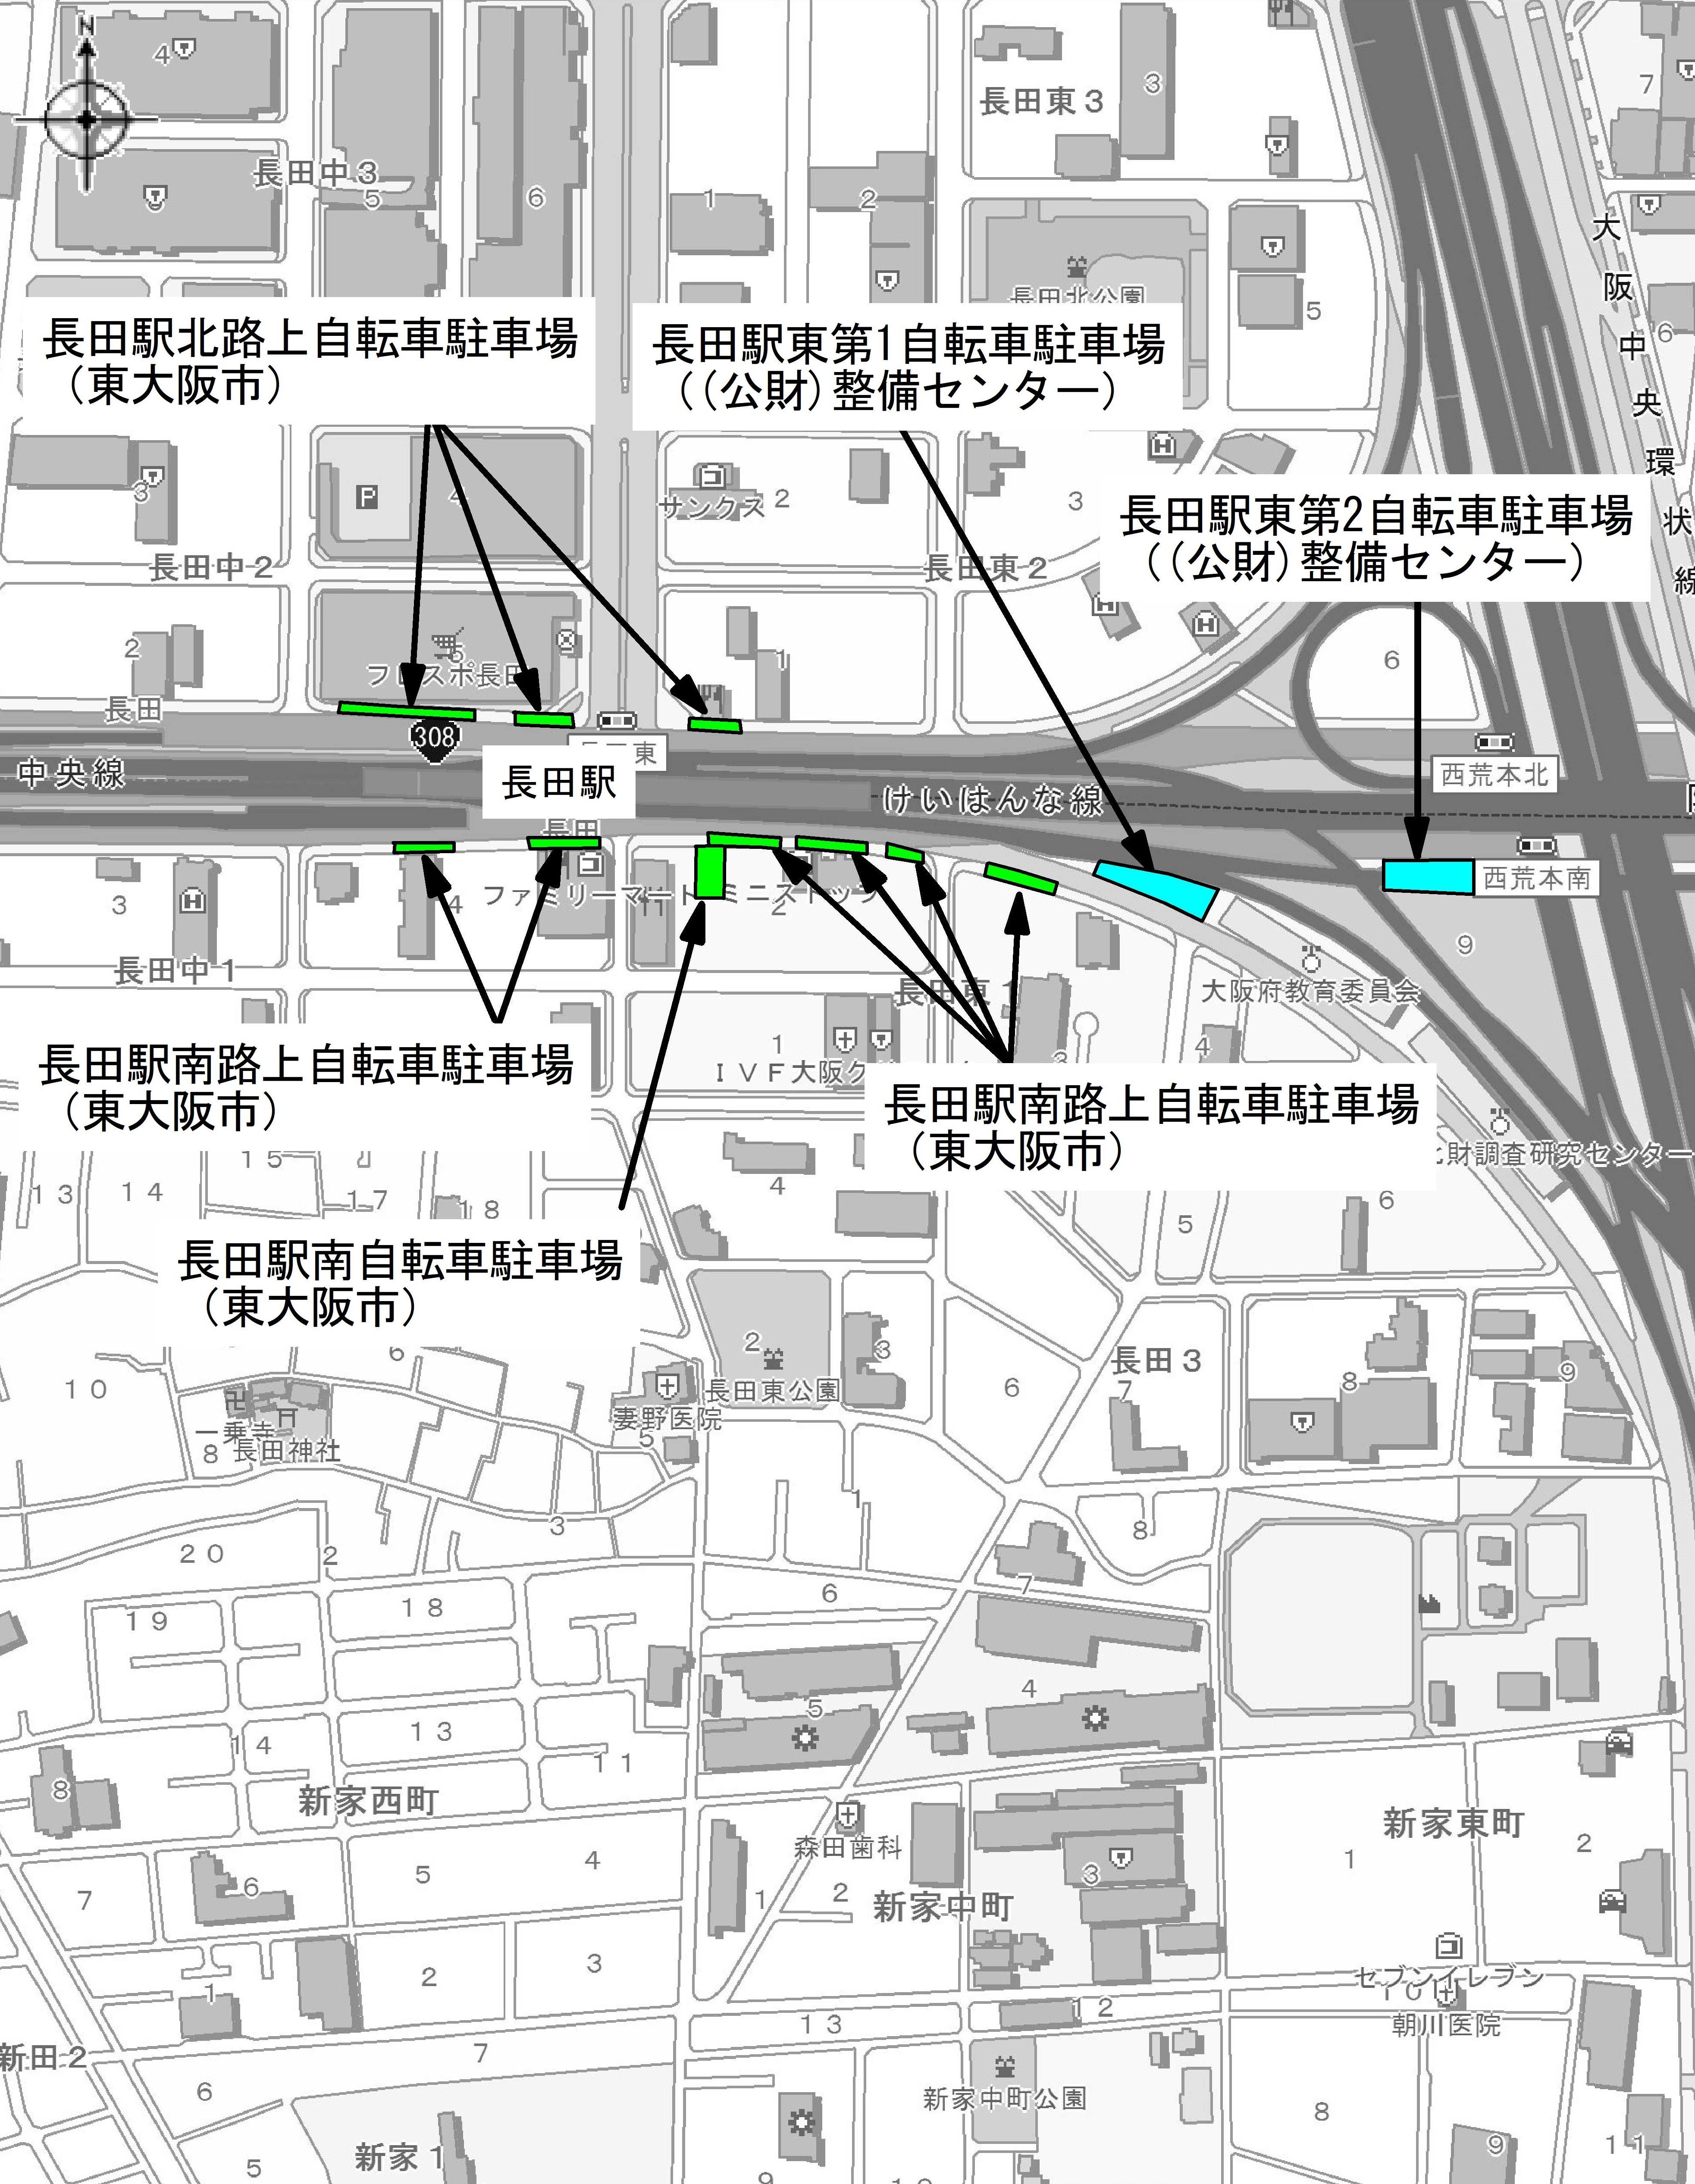 長田駅周辺自転車駐車場案内図